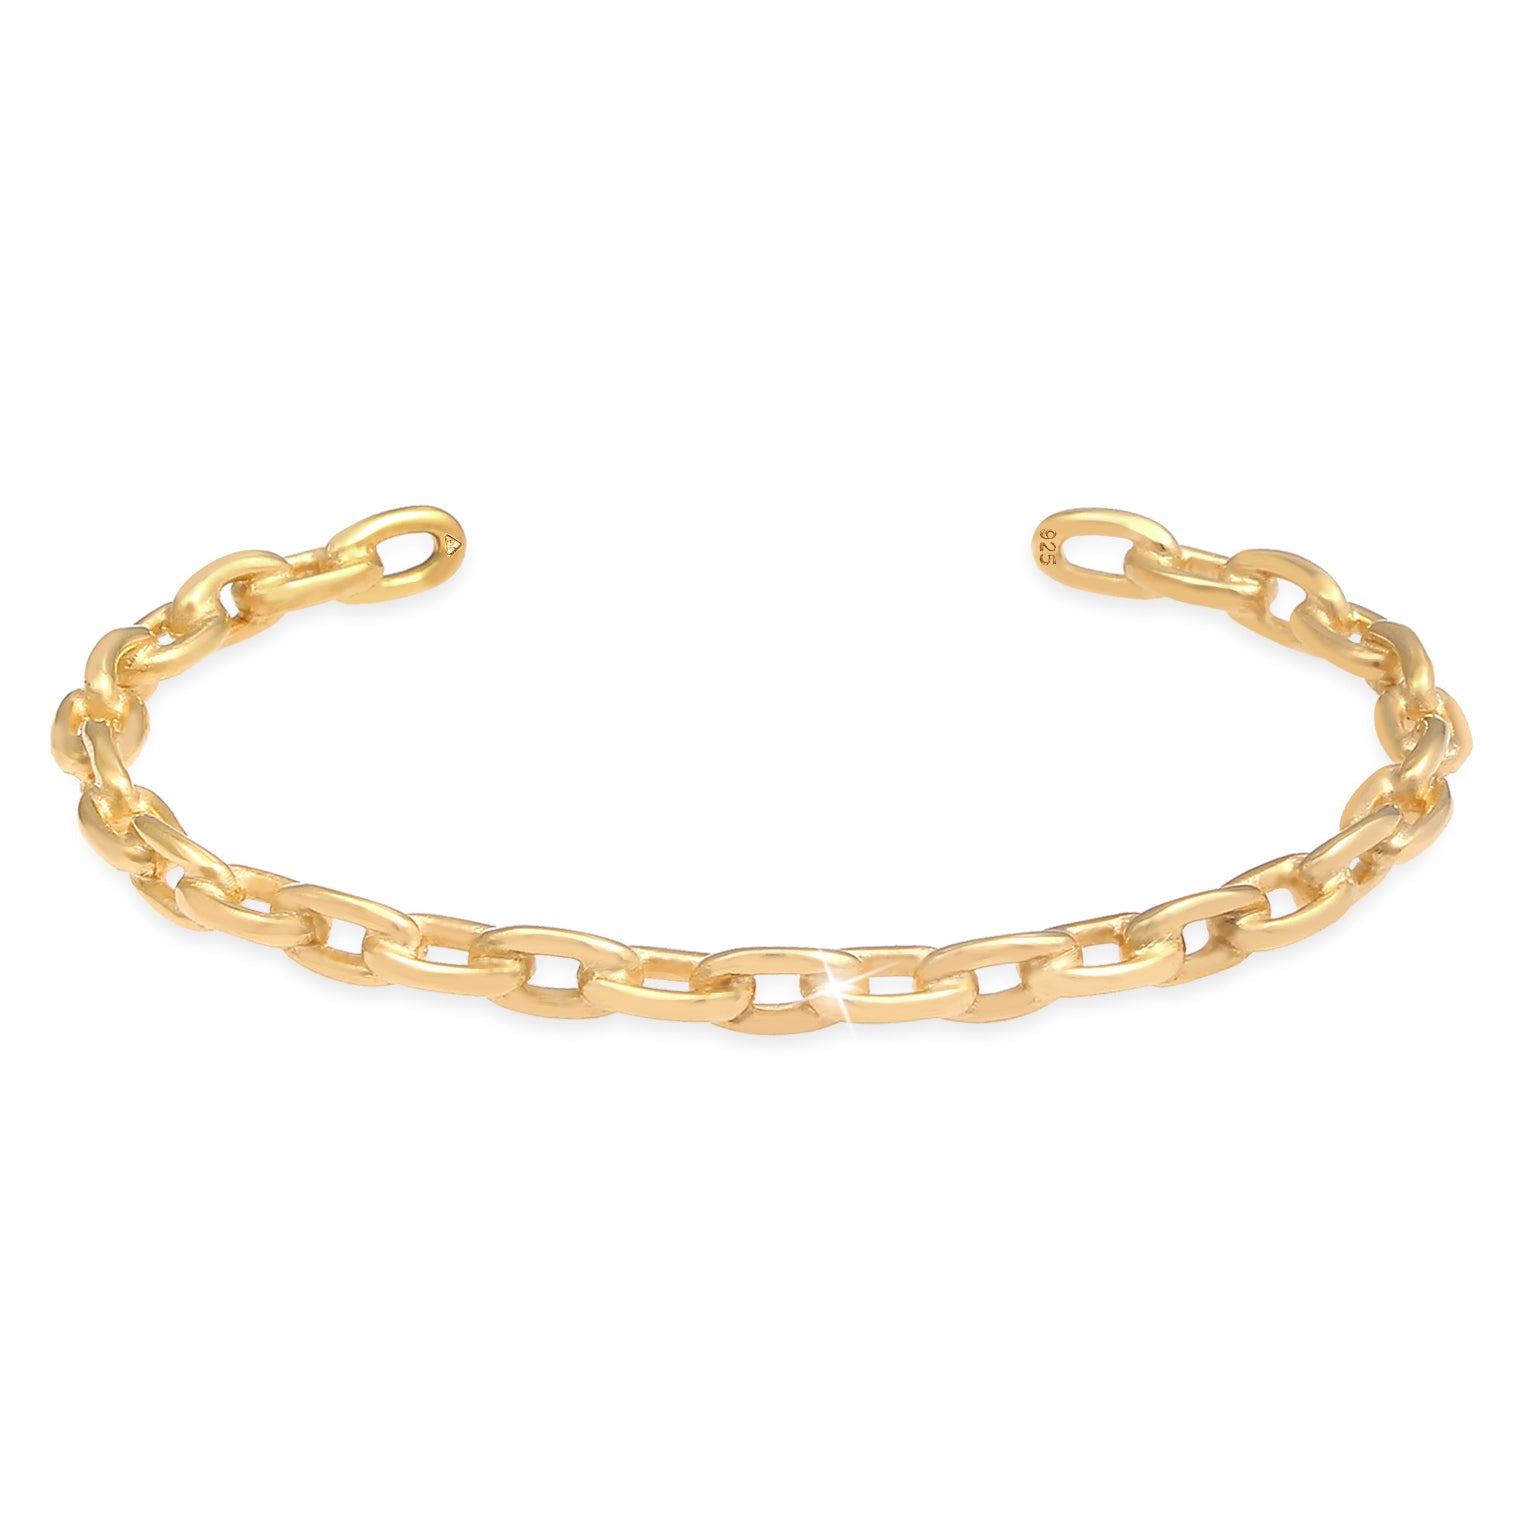 Armbänder im Online-Shop kaufen Elli Seite Elli – – Jewelry von 4